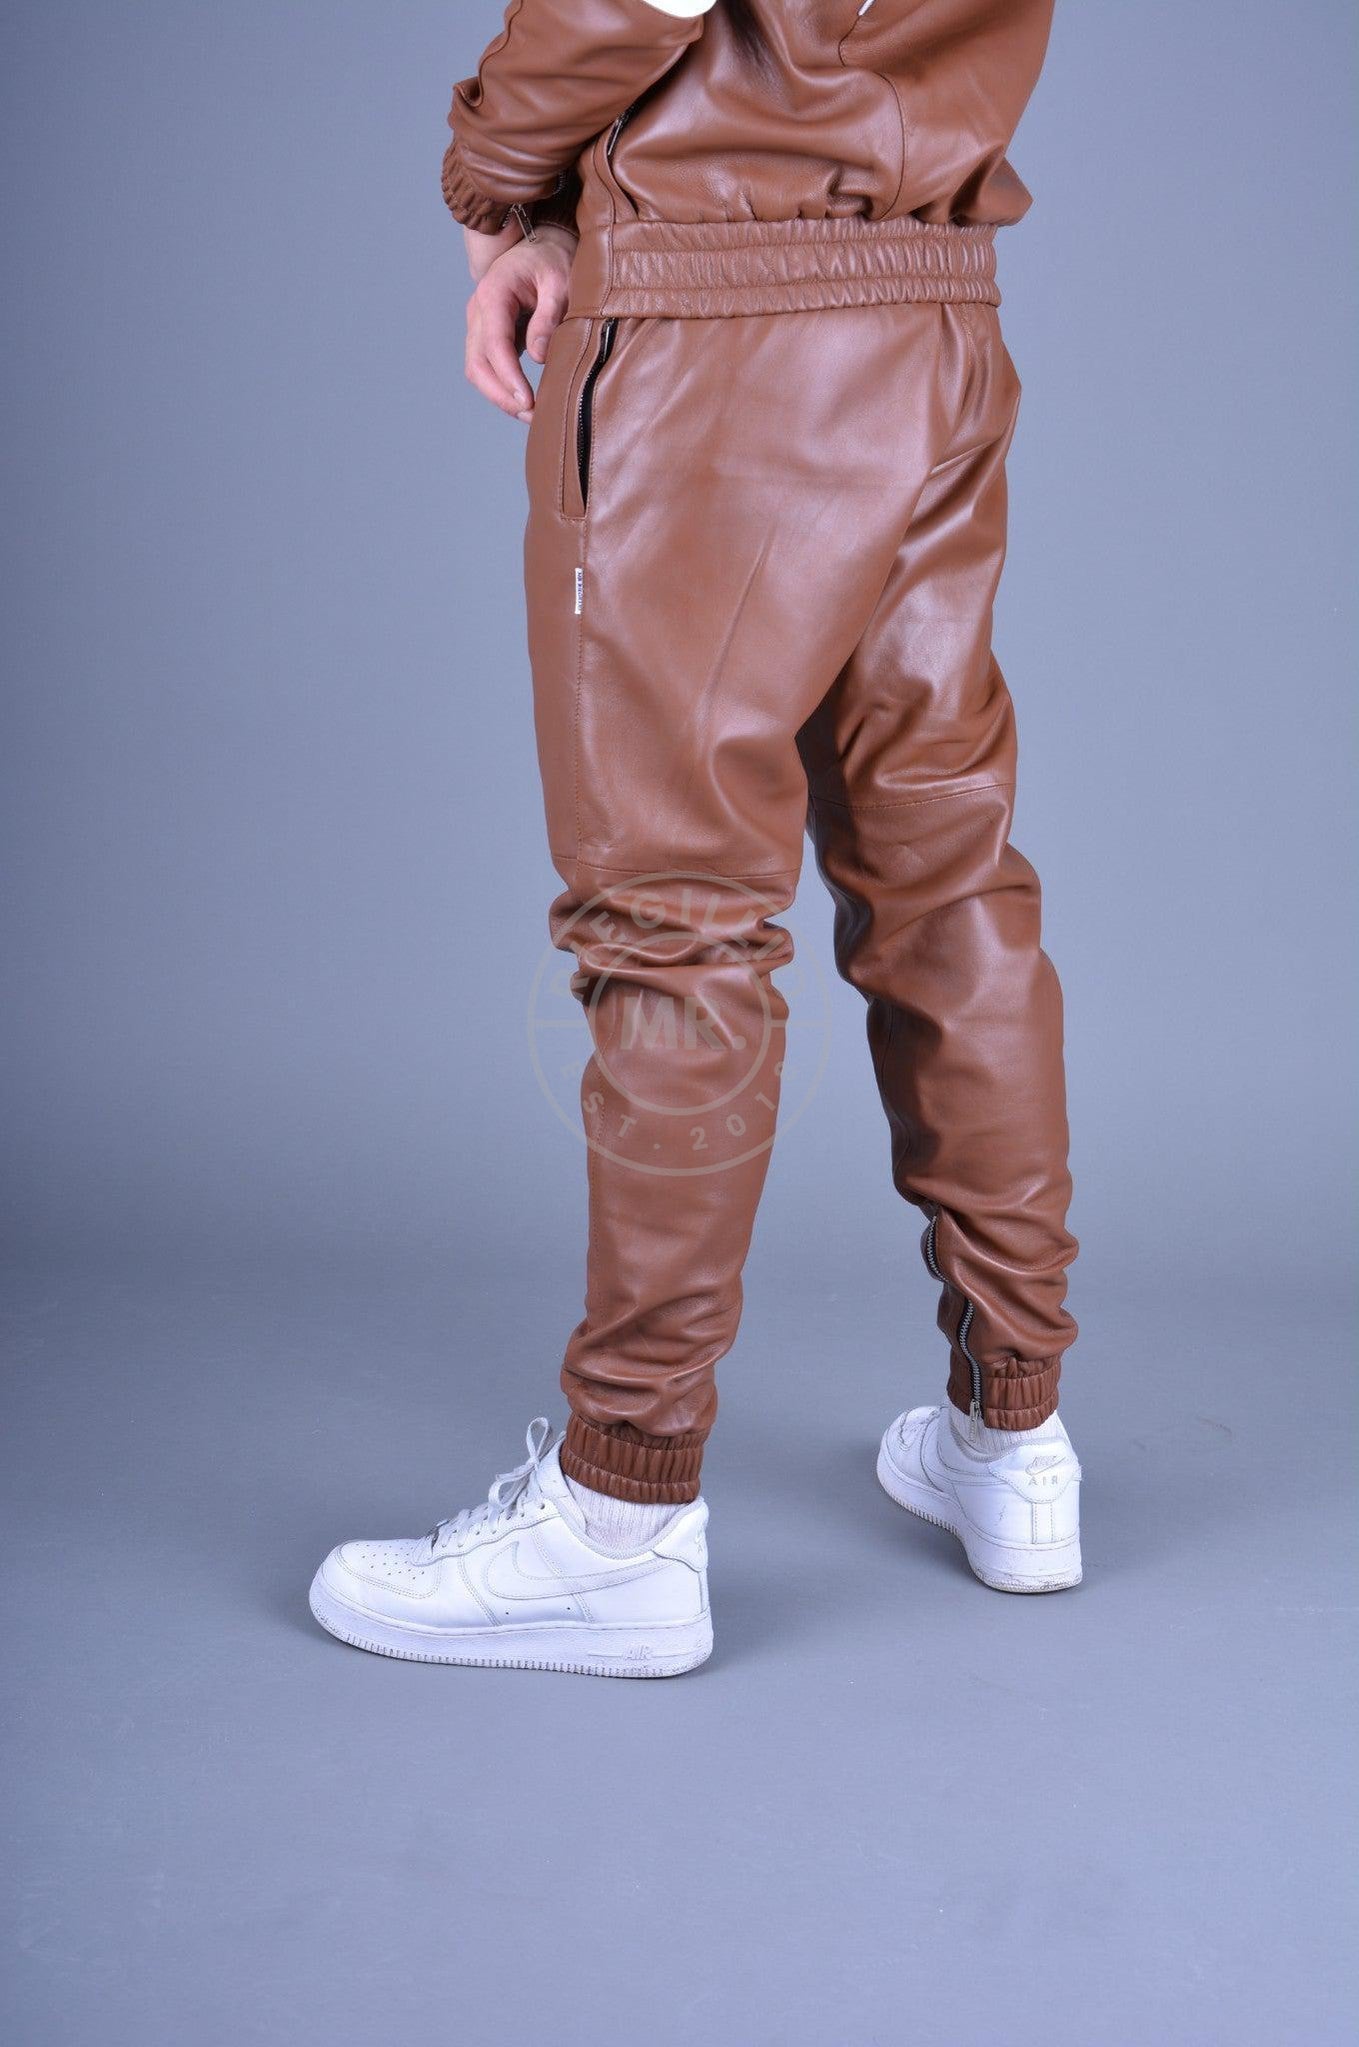 Cinnamon Brown Leather Tracksuit Pants at MR. Riegillio